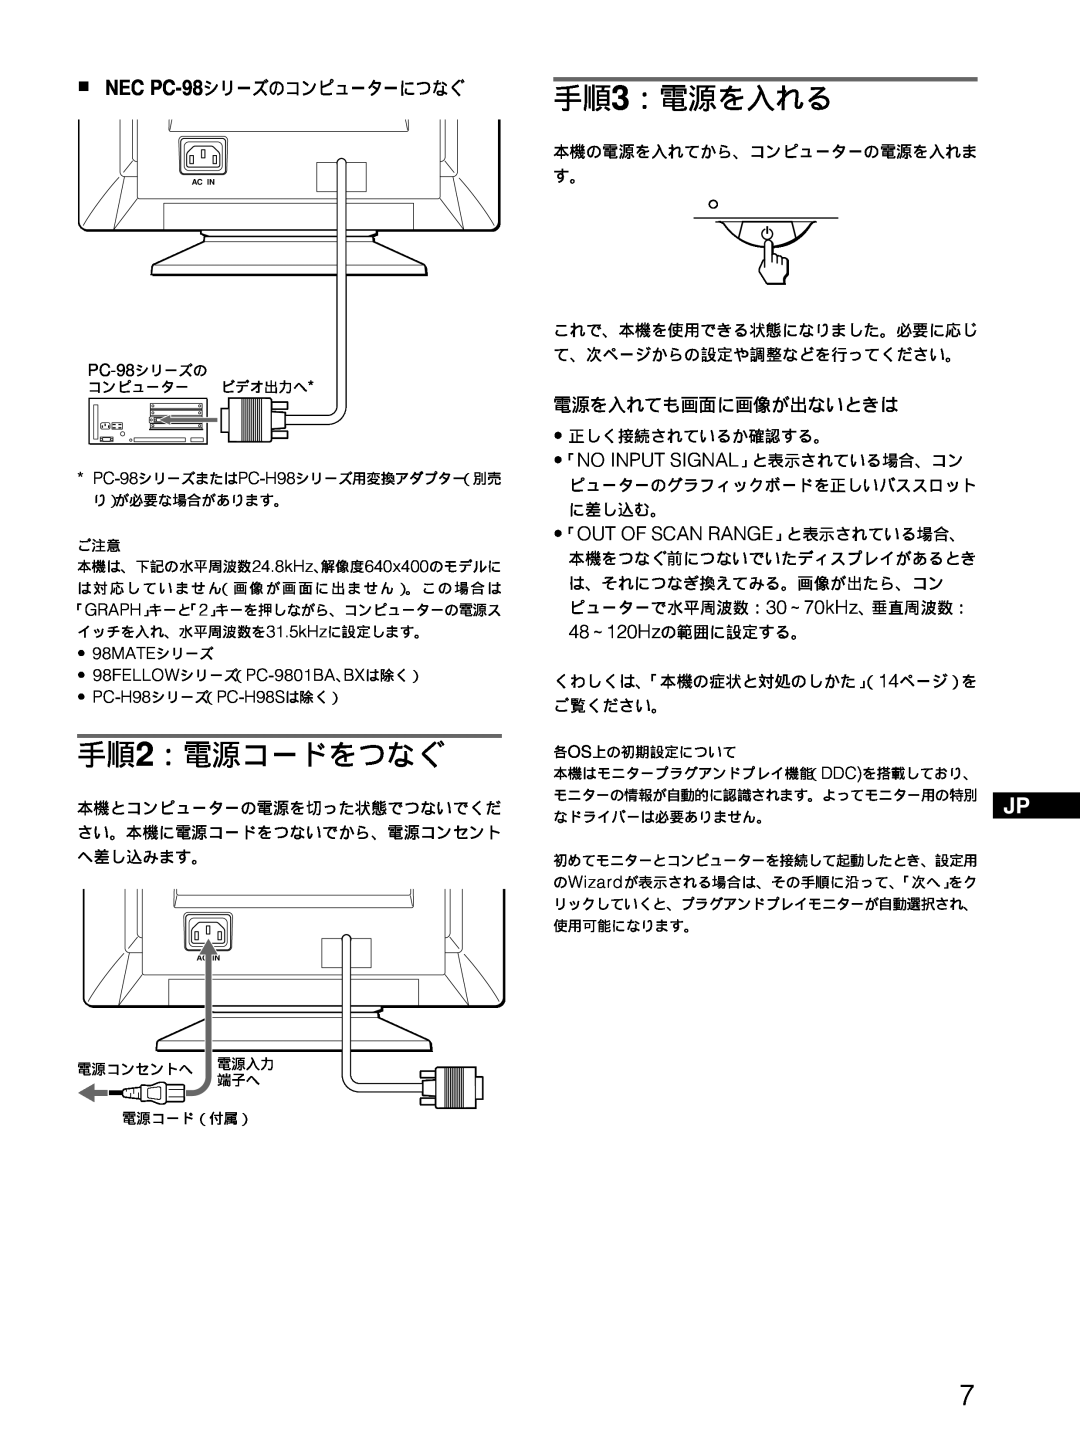 Sony CPD-E100 手順2：電源コードをつなぐ, 手順3：電源を入れる, 「Out Of Scan Range」と表示されている場合、, NEC PC-98シリーズのコンピューターにつなぐ, 電源を入れても画面に画像が出ないときは 